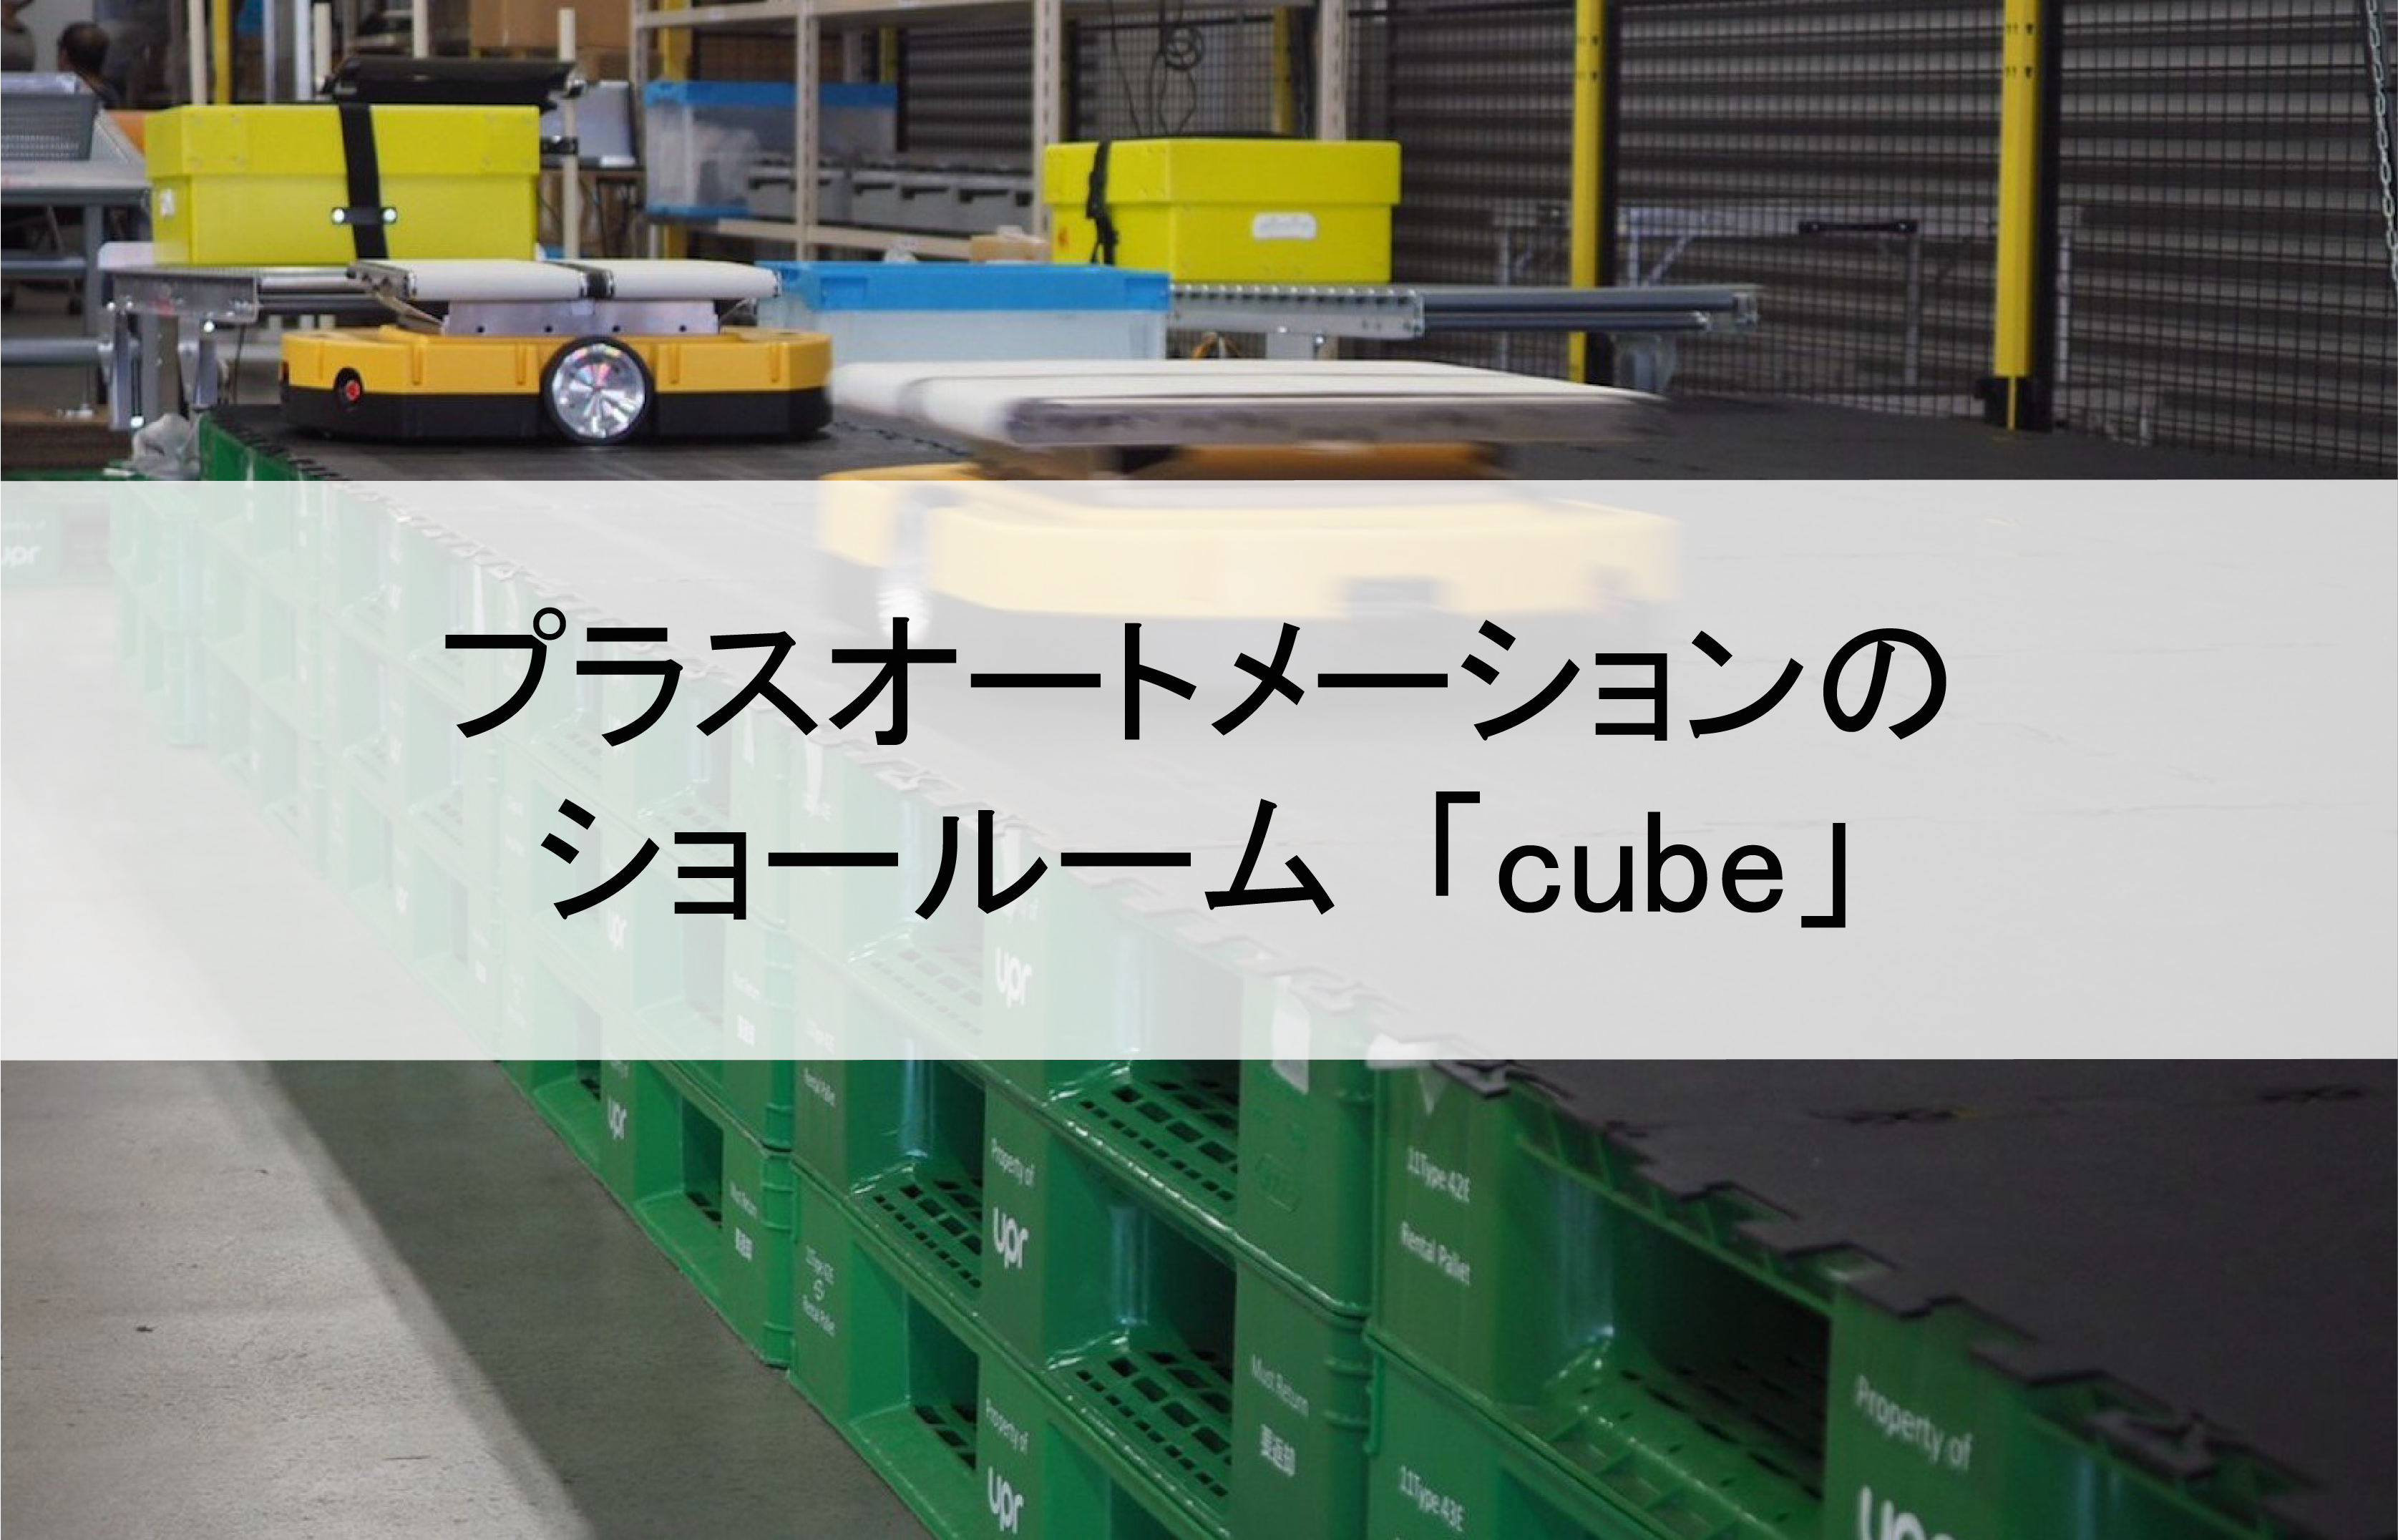 【取材】プラスオートメーションのショールーム ”cube